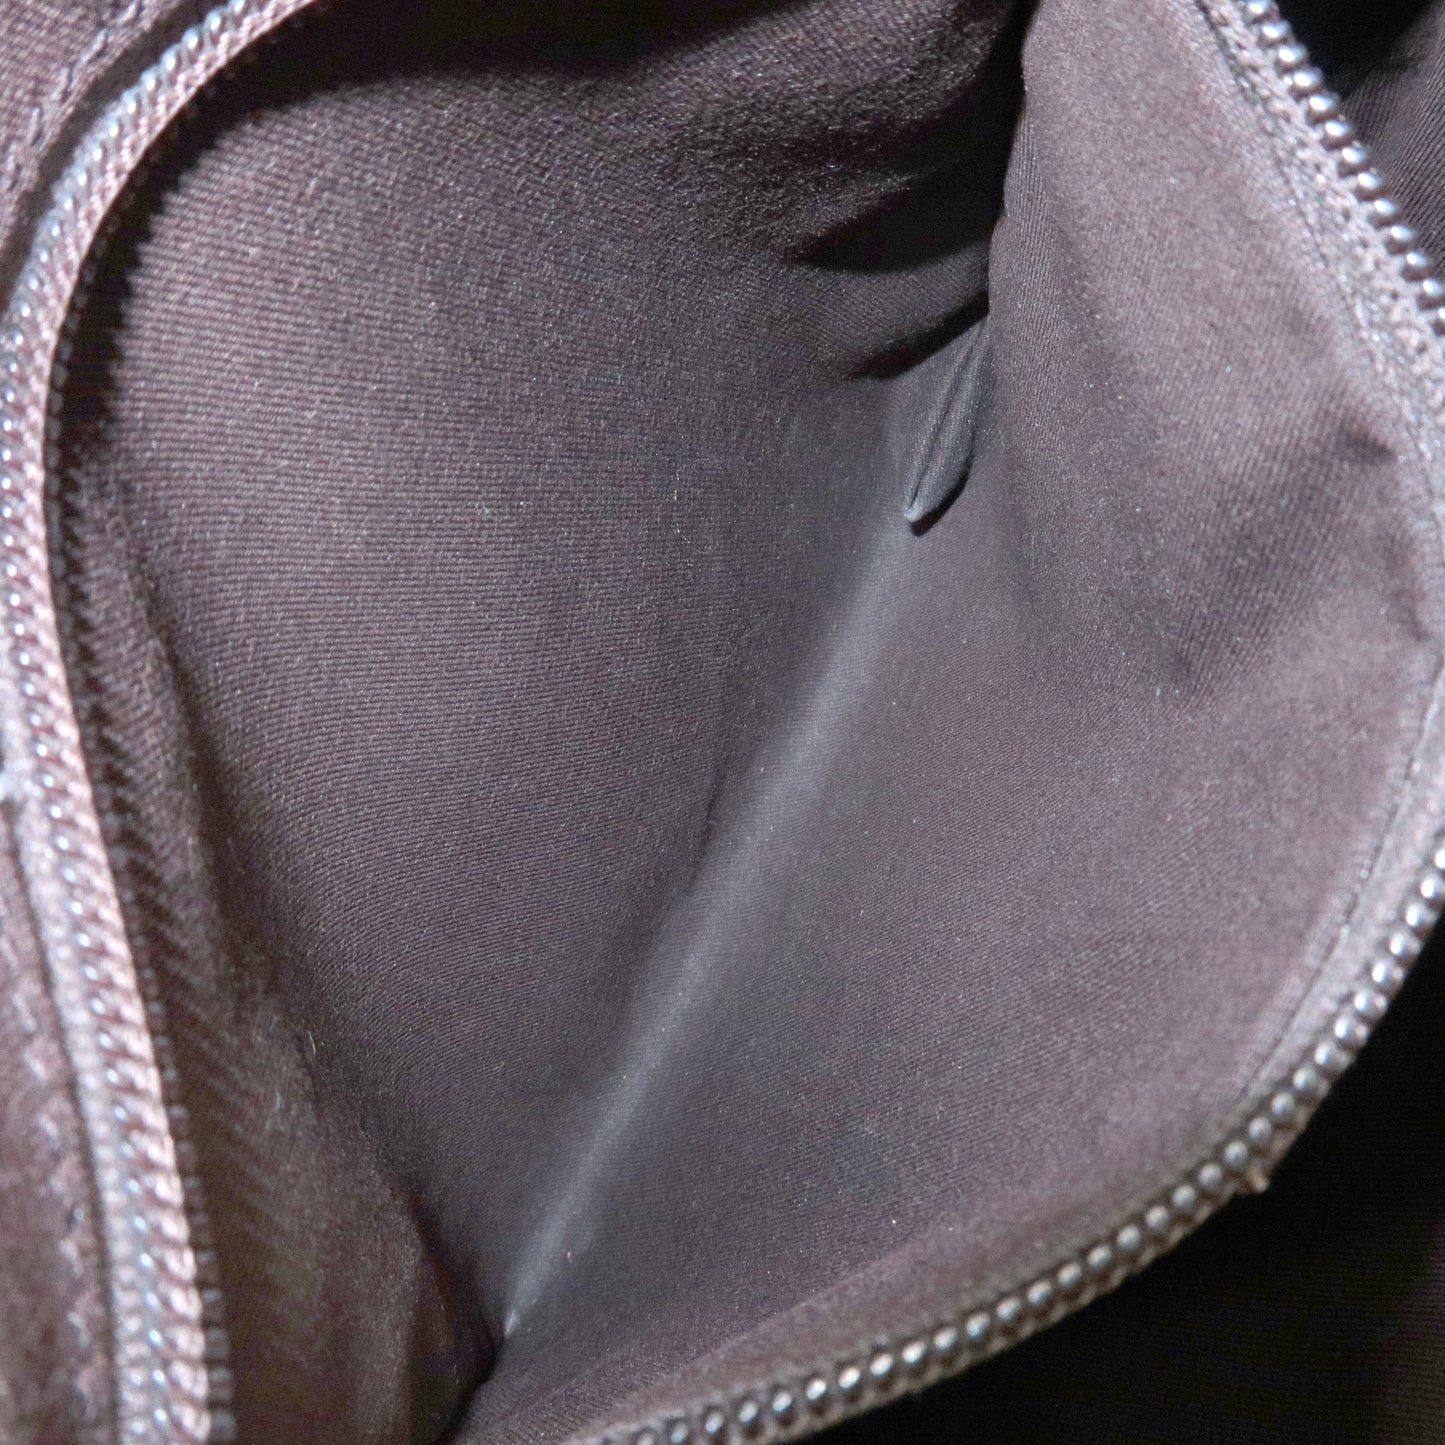 GUCCI GG Supreme Leather Shoulder Bag Beige Brown 141626